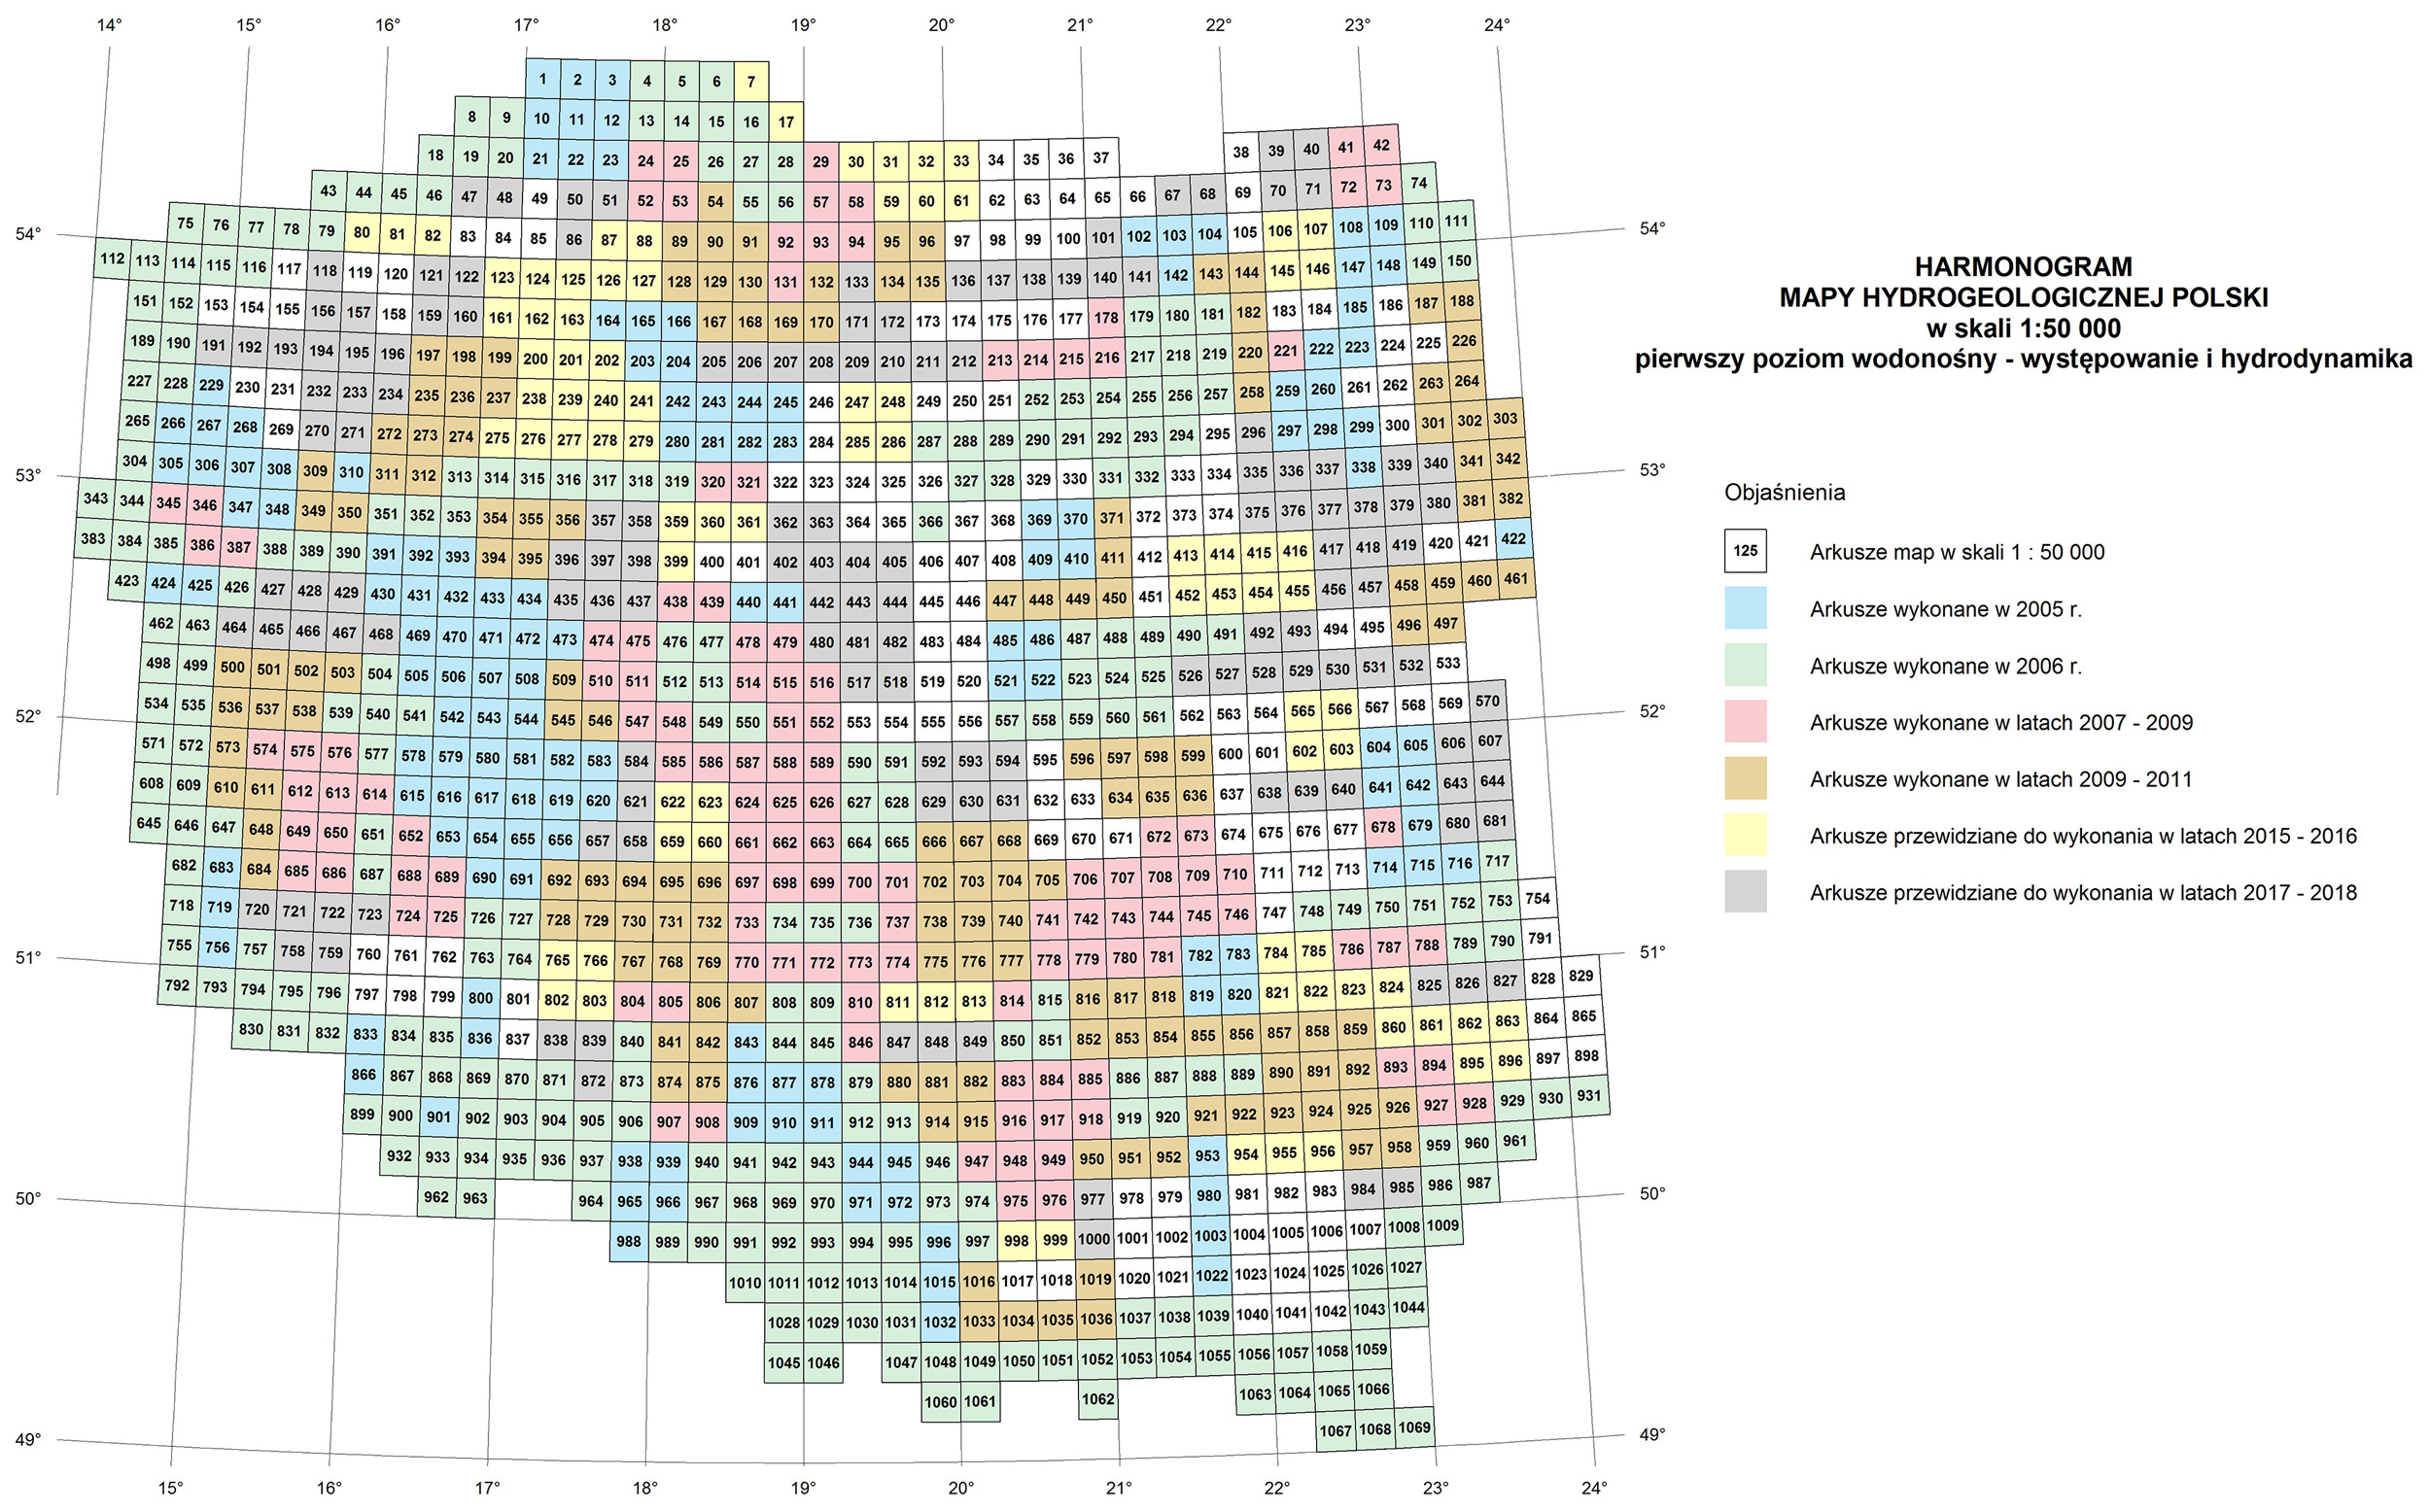 Harmonogram realizacji warstw informacyjnych bazy danych GIS MHP  do 2018 roku